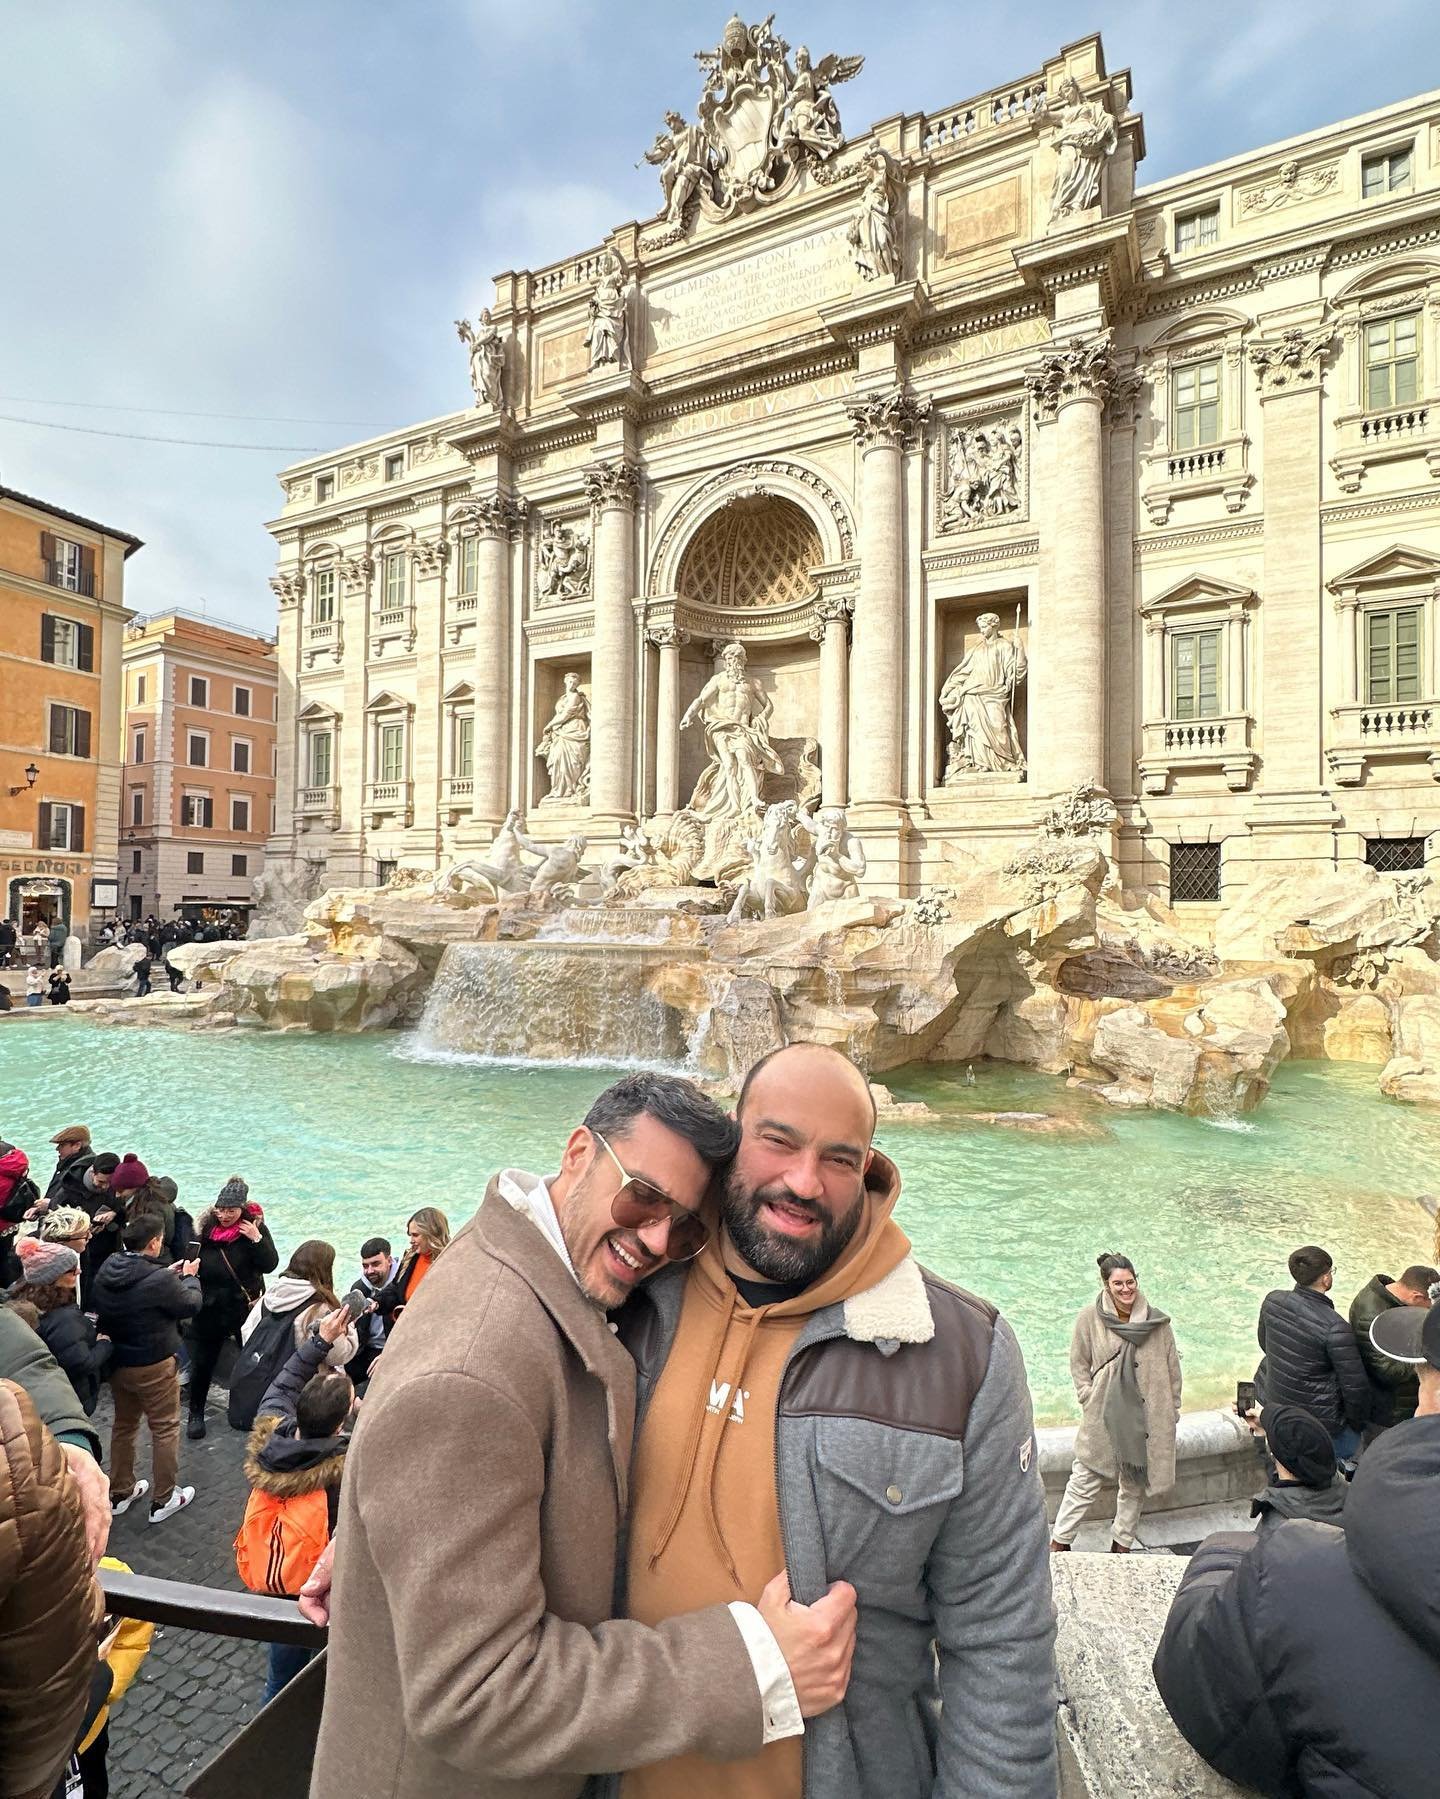 Παντελής Τουτουντζής: Το ρομαντικό ταξίδι με τον σύντροφό του στη Ρώμη και οι κοινές φωτογραφίες